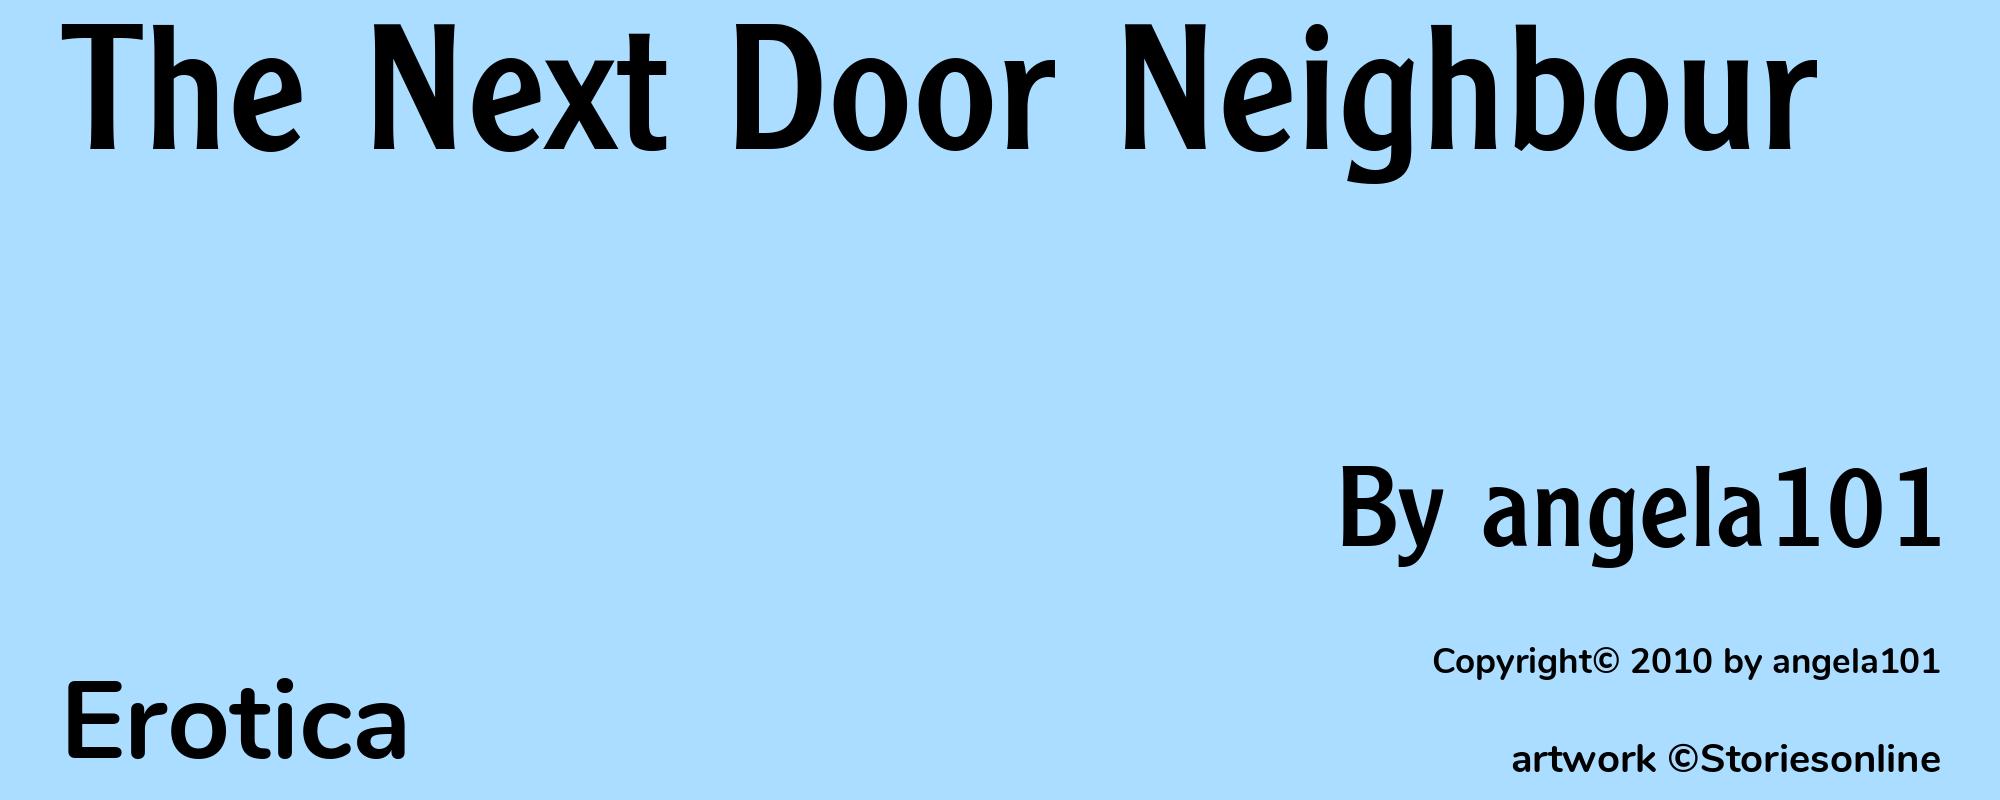 The Next Door Neighbour - Cover